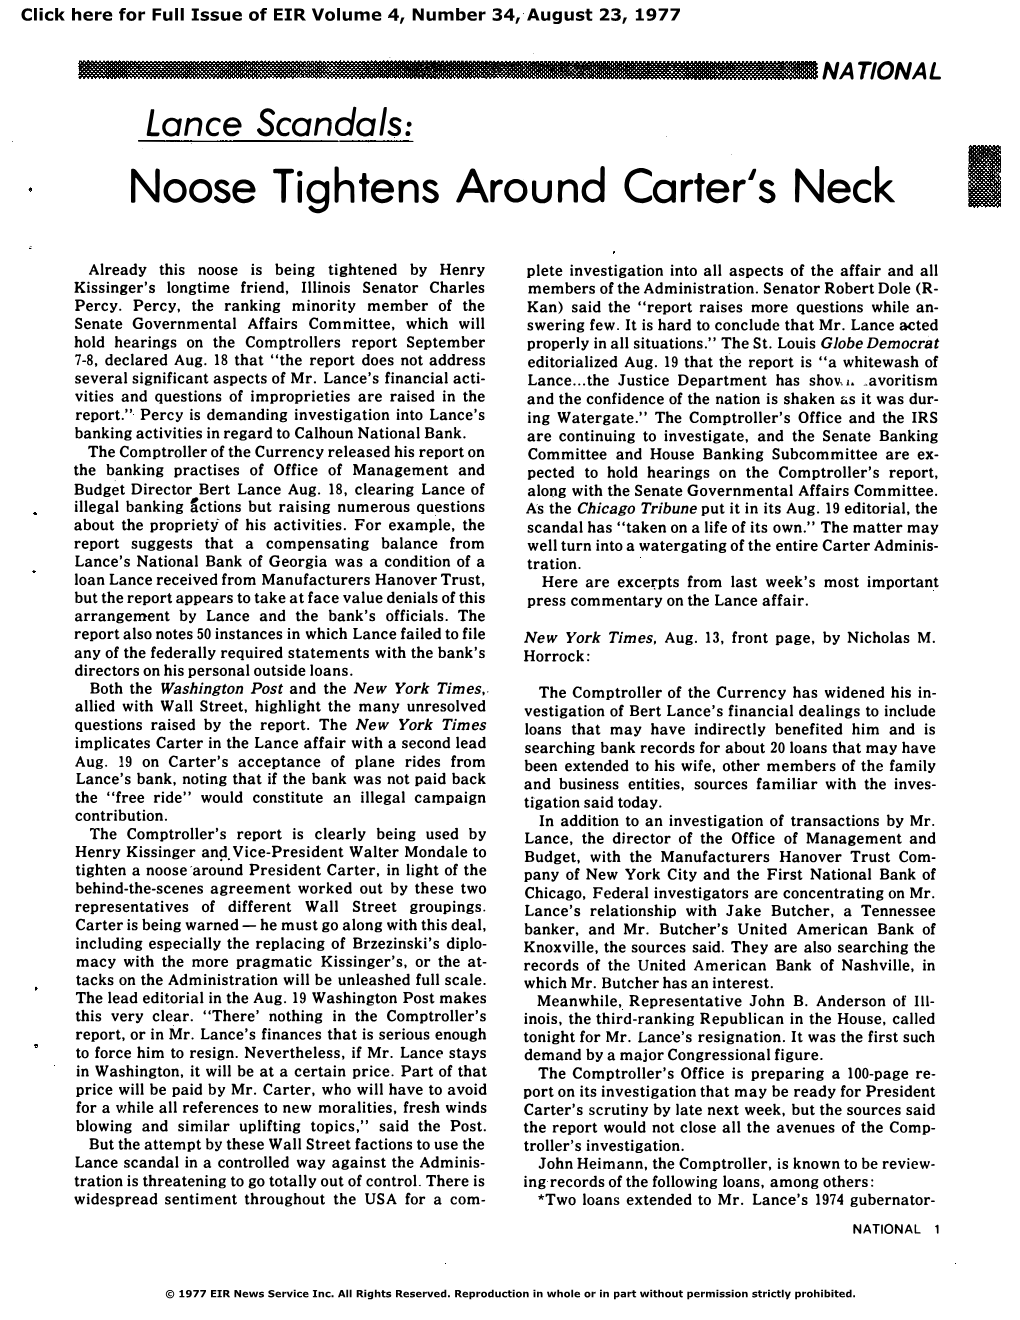 Lance Scandals: Noose Tightens Around Carter's Neck